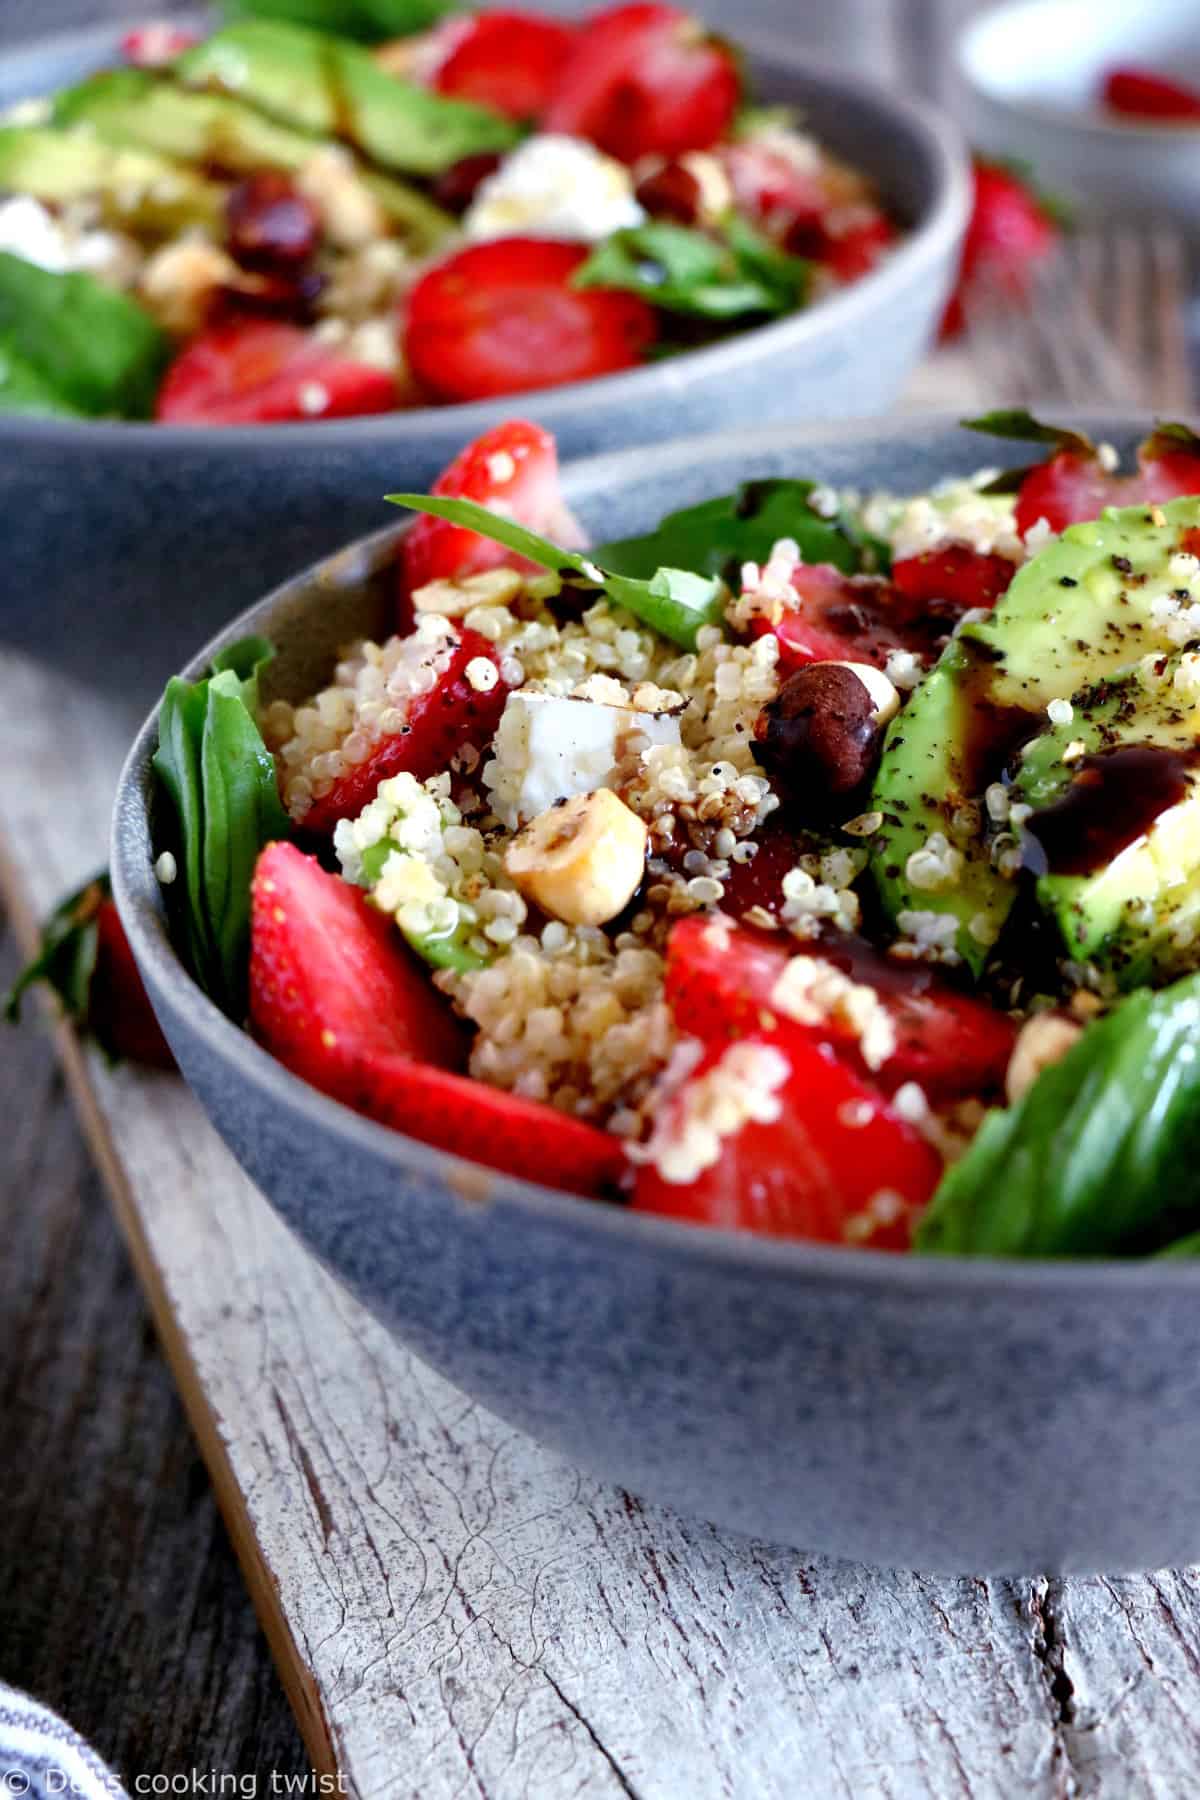 Cette salade de quinoa aux fraises et à la feta est une recette estivale simplissime aux saveurs fraîches et audacieuses.